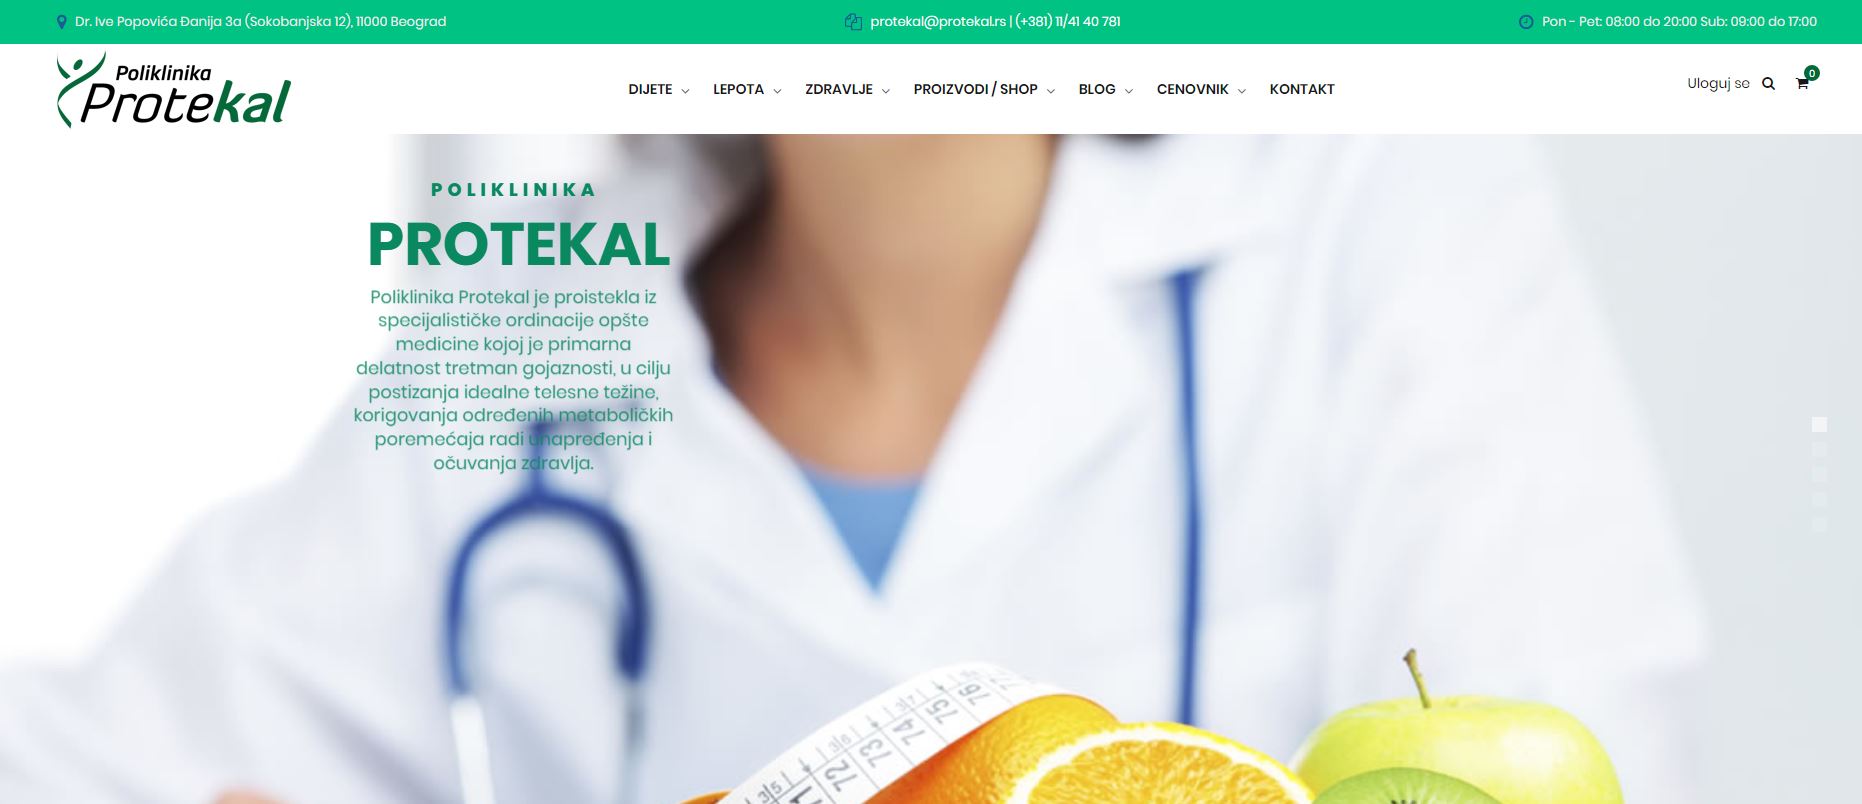 Web sajt www.protekal.rs